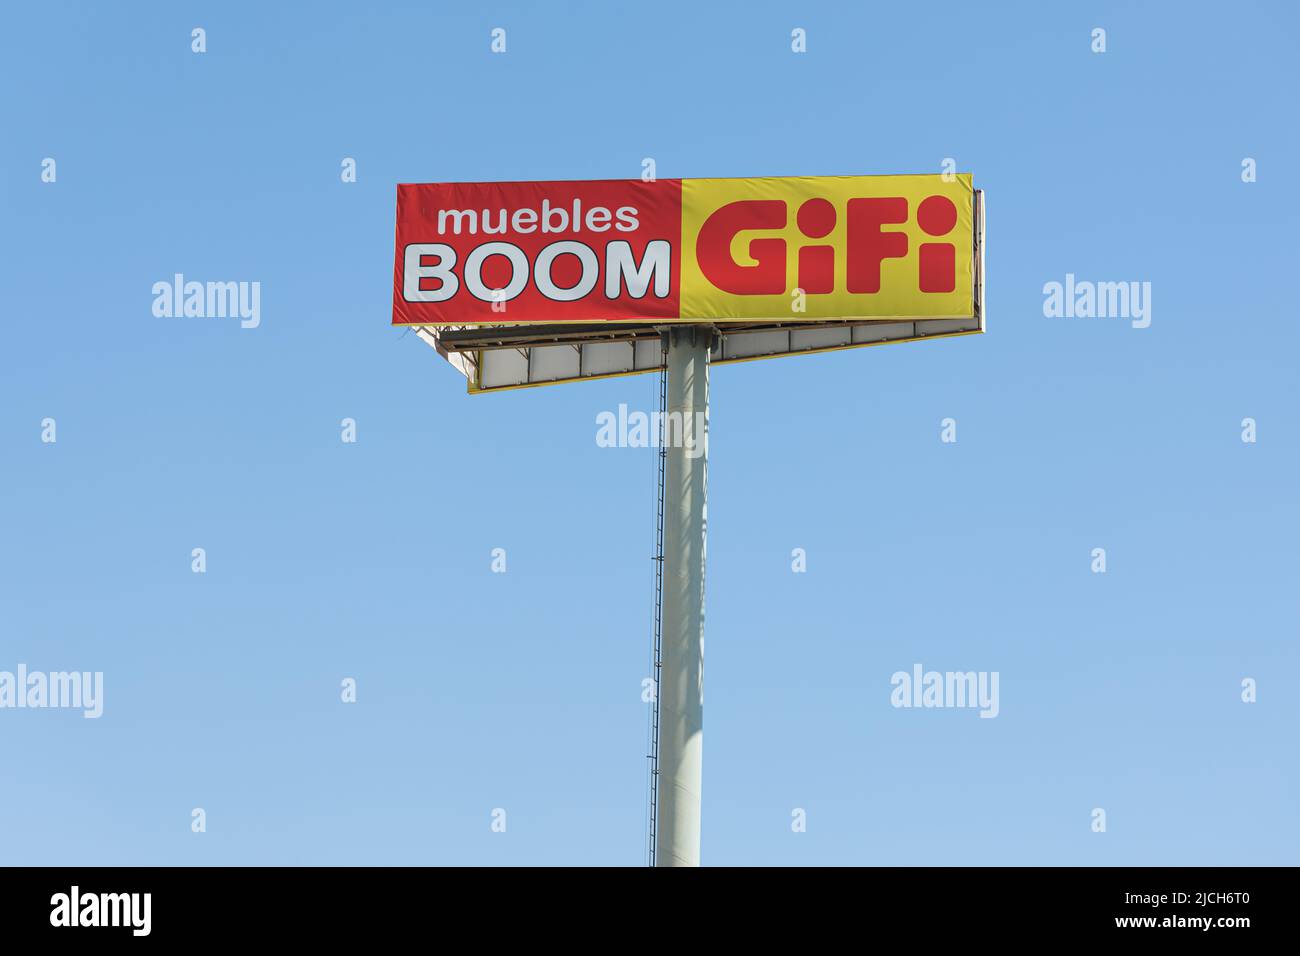 ALFAFAR, SPAIN - JUNE 06, 2022: Gifi and Muebles Boom stores at P.C. Alfafar, Valencia Stock Photo